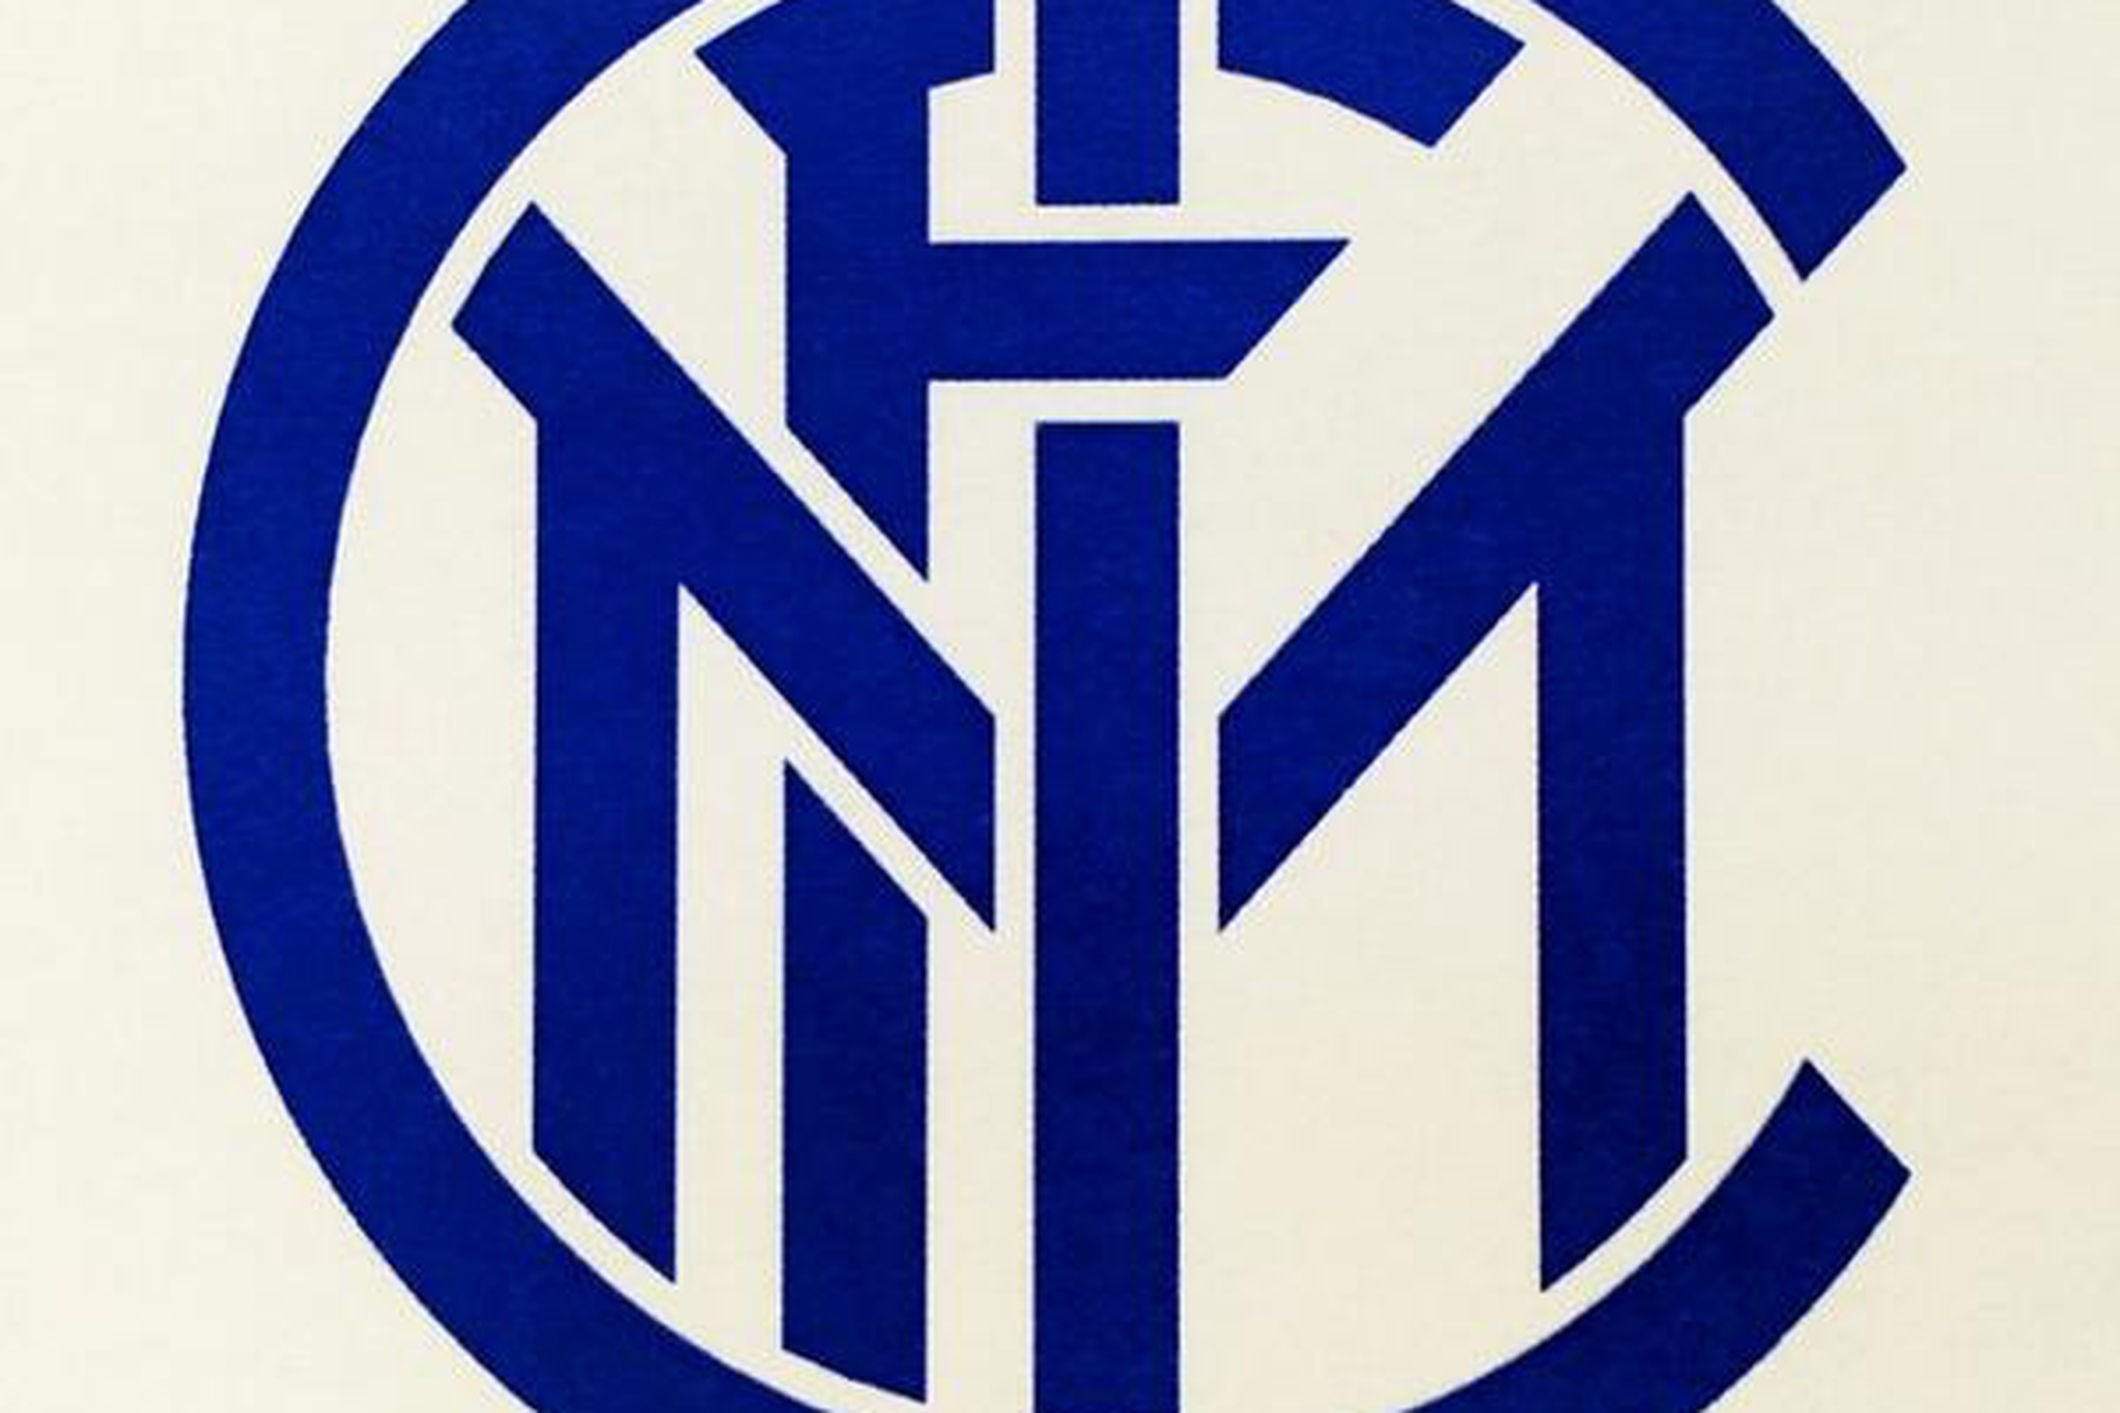 Inter me. Интер логотип. Интер новый логотип. ФК Интер эмблема. ФК Интер логотип новый.